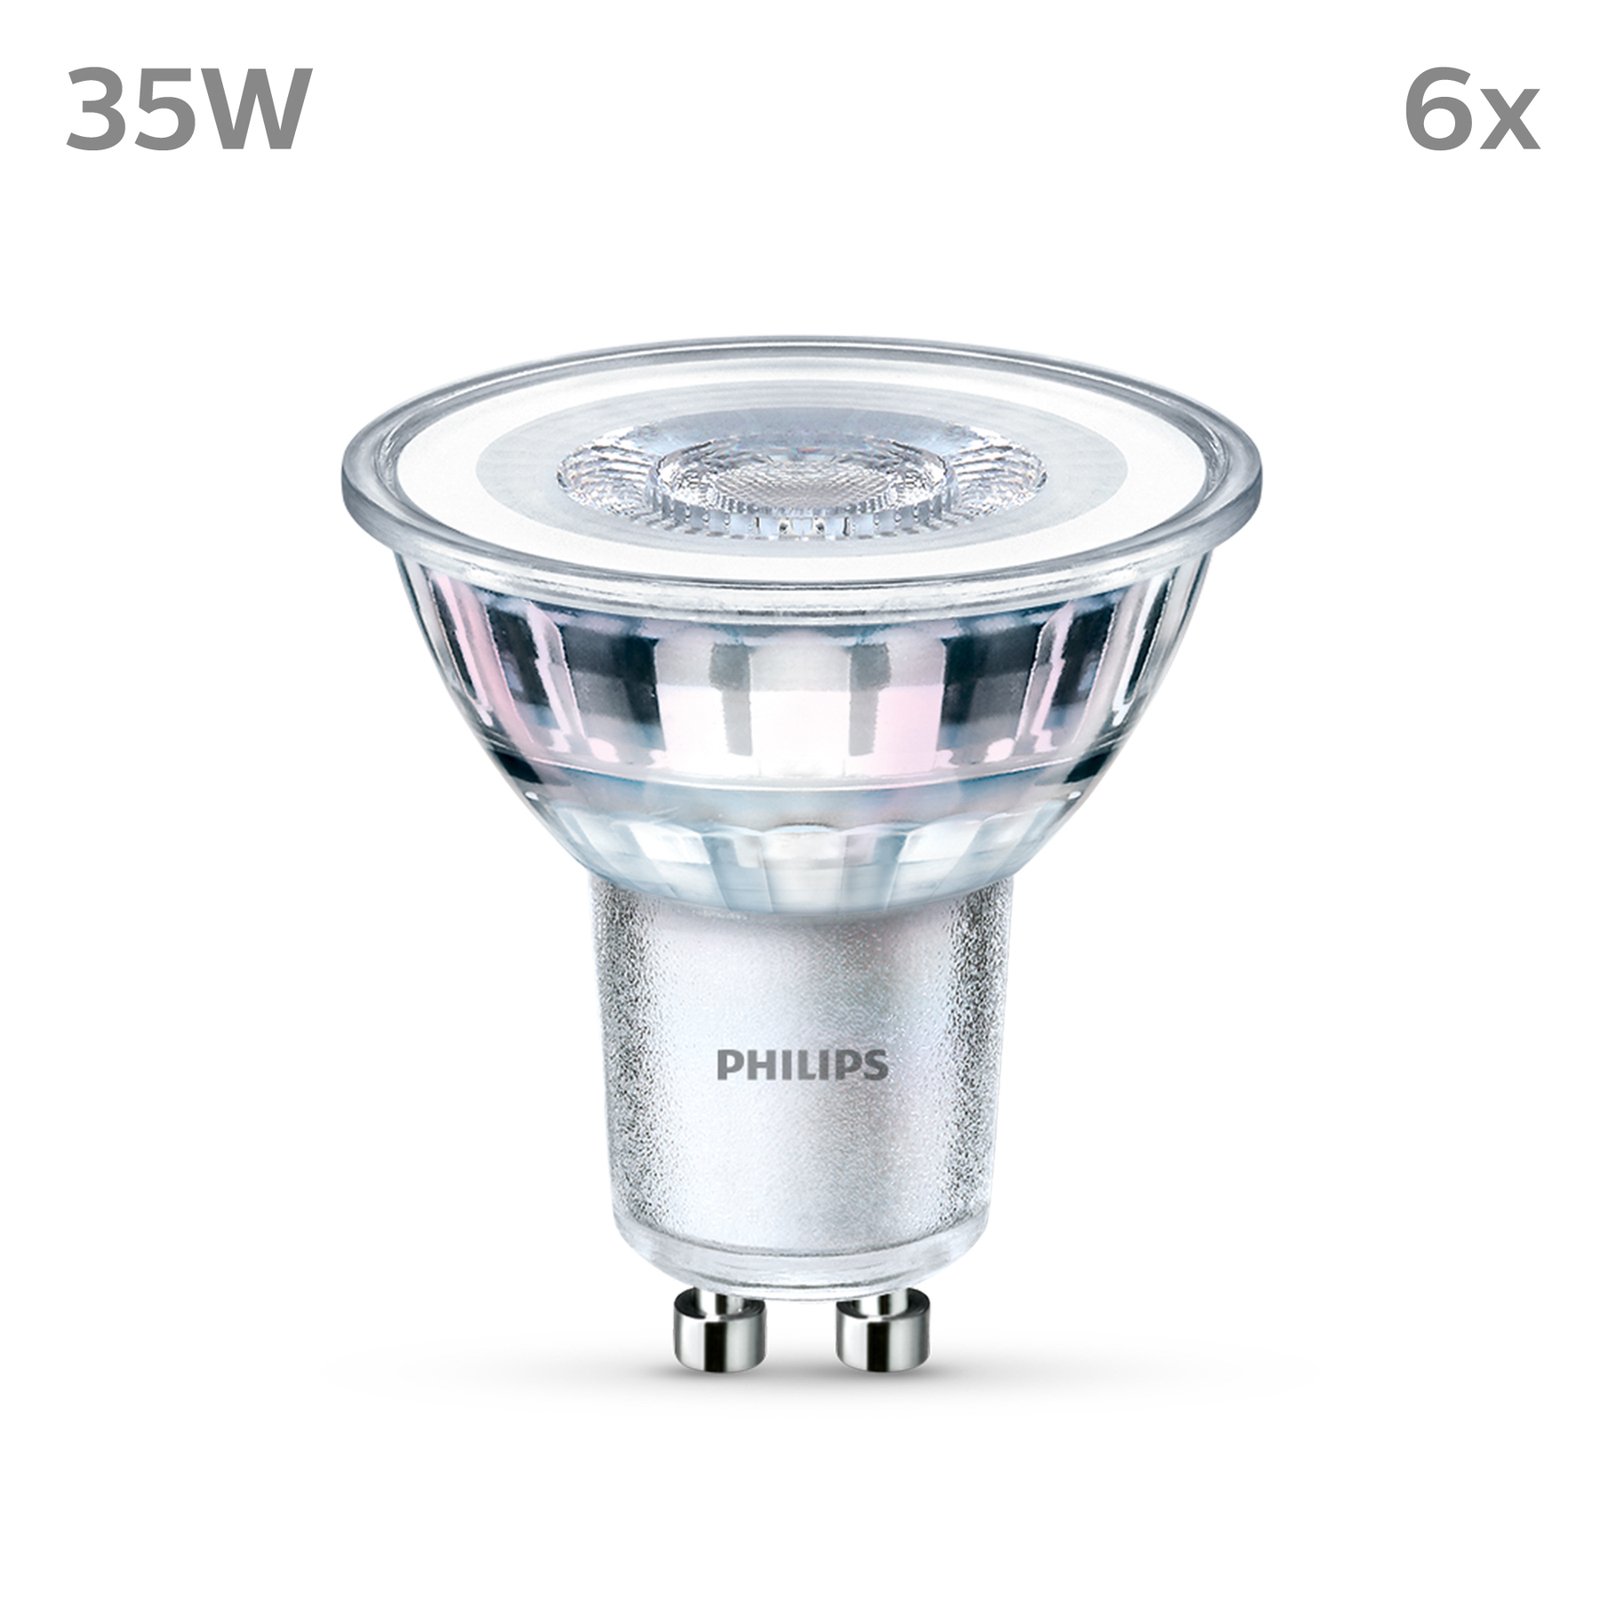 Philips LED-Lampe GU10 3,5W 255lm 827 klar 36° 6er